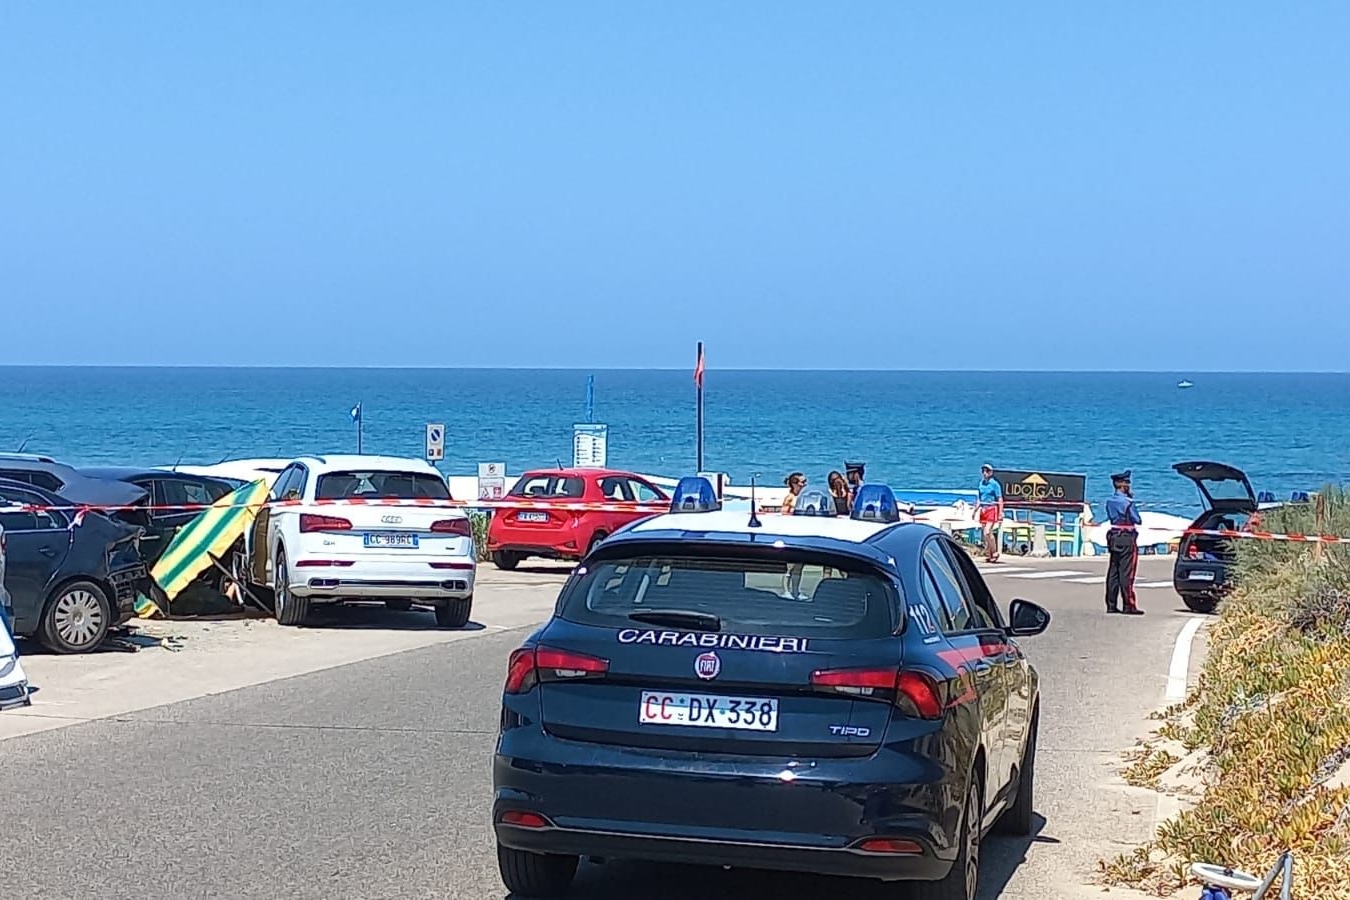 Badesi, suv impazzito piomba sulle auto nel parcheggio della spiaggia: due donne investite, una muore